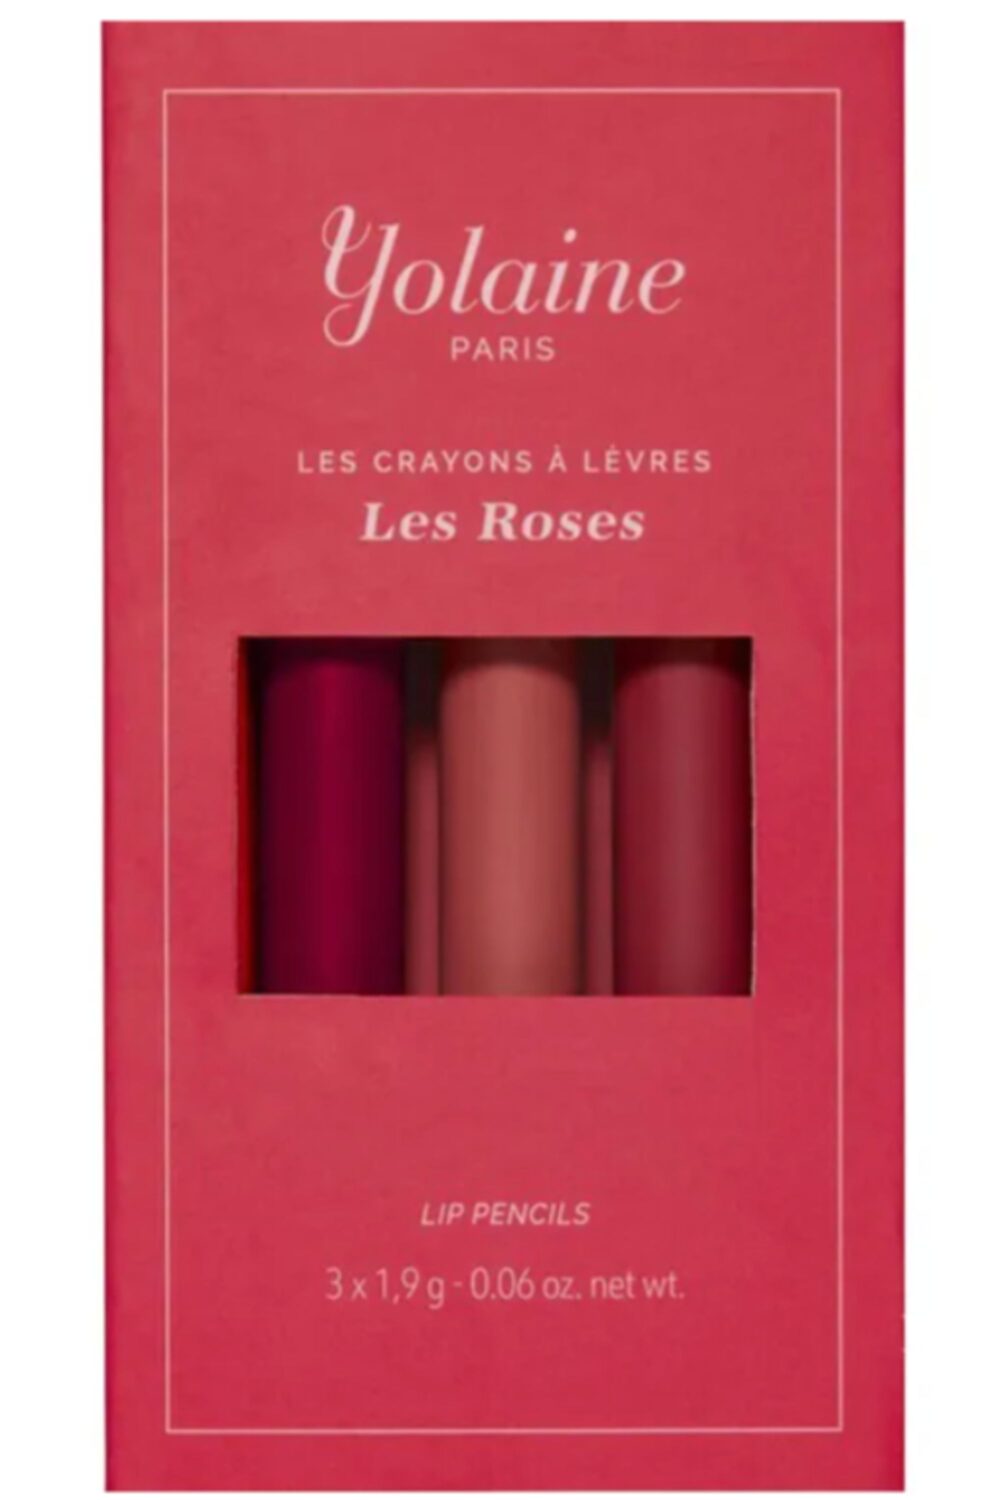 Yolaine - Les crayons à lèvres – Les Roses La boîte de crayons à lèvres Les Roses